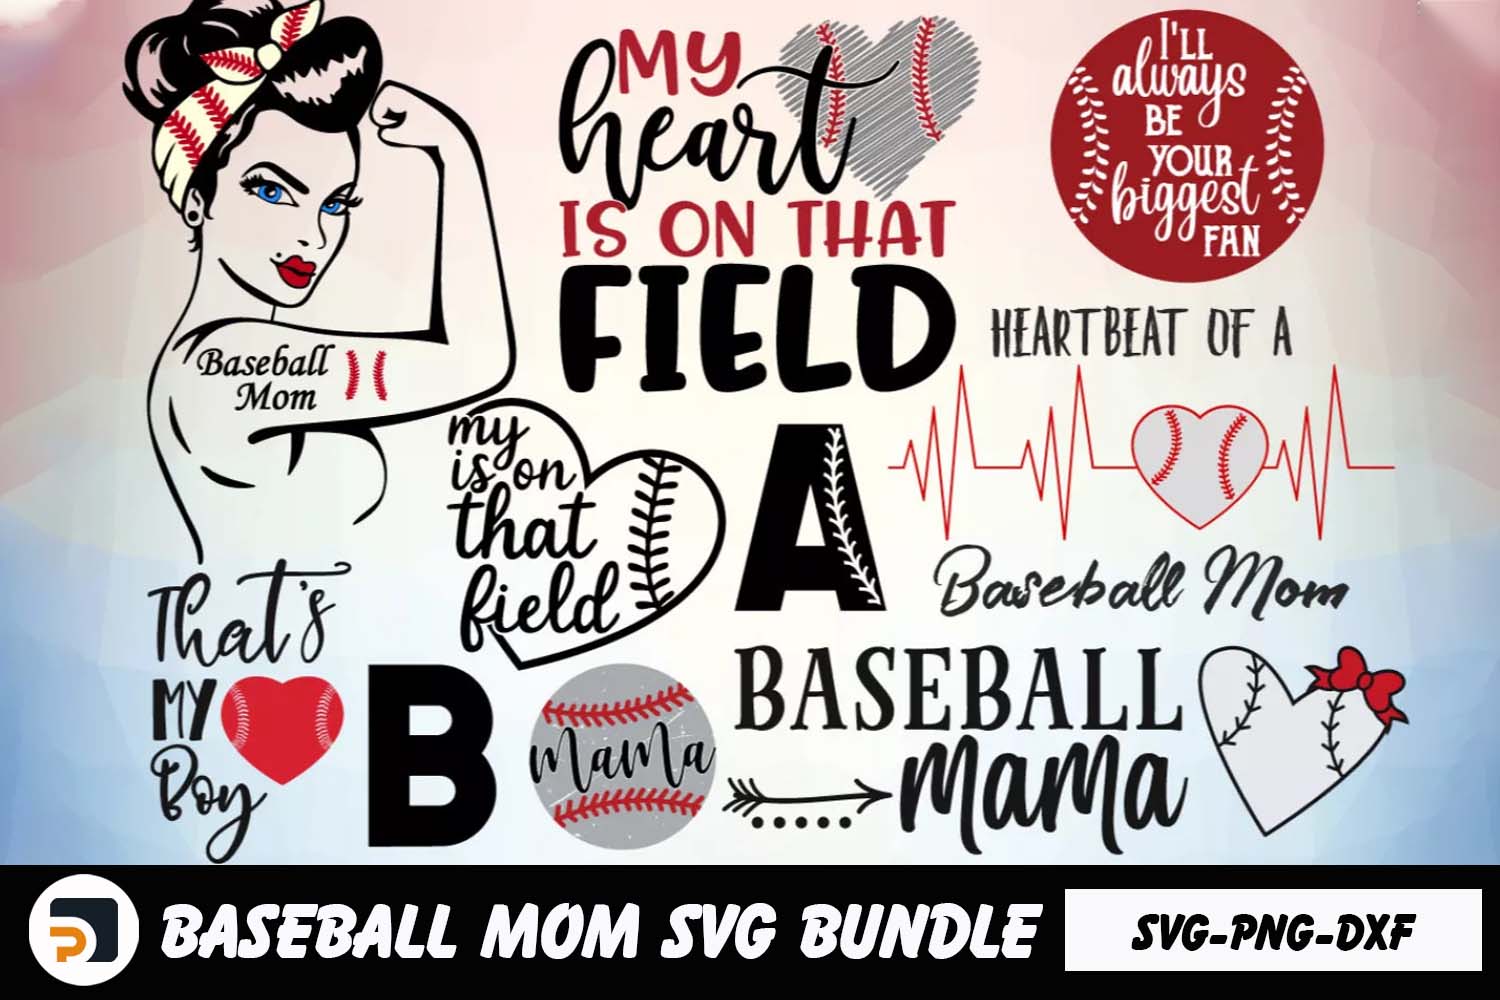 Baseball Mom SVG Bundle 100+ Designs Sports SVG PNG DXF Digital Download LETCFSTF|||Baseball Mom SVG Bundle 100+ Designs Sports SVG PNG DXF Digital Download|